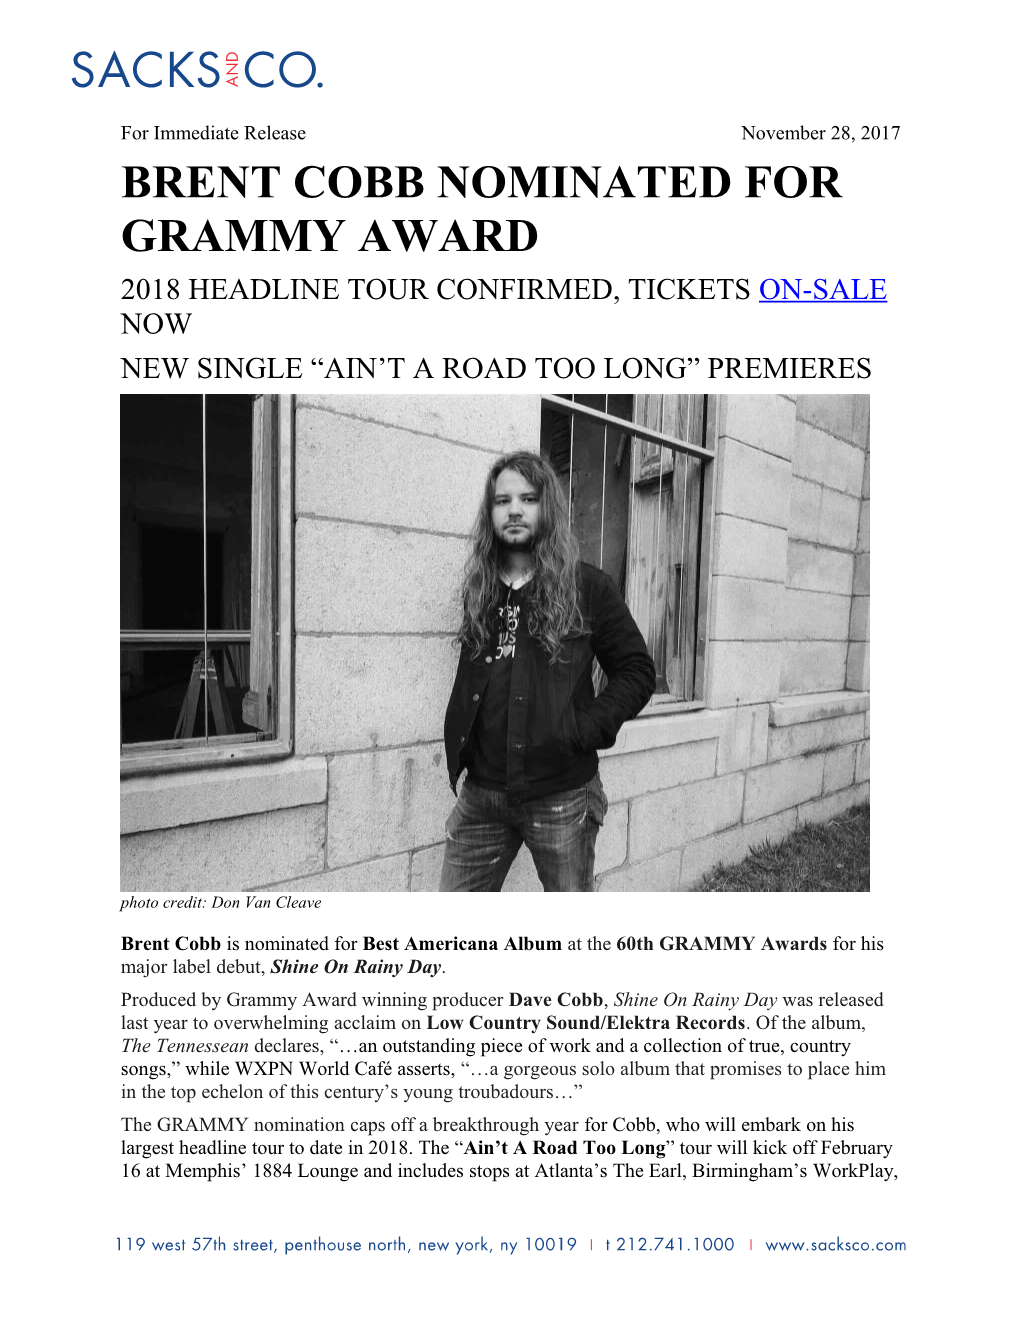 Brent Cobb Nominated for Grammy Award